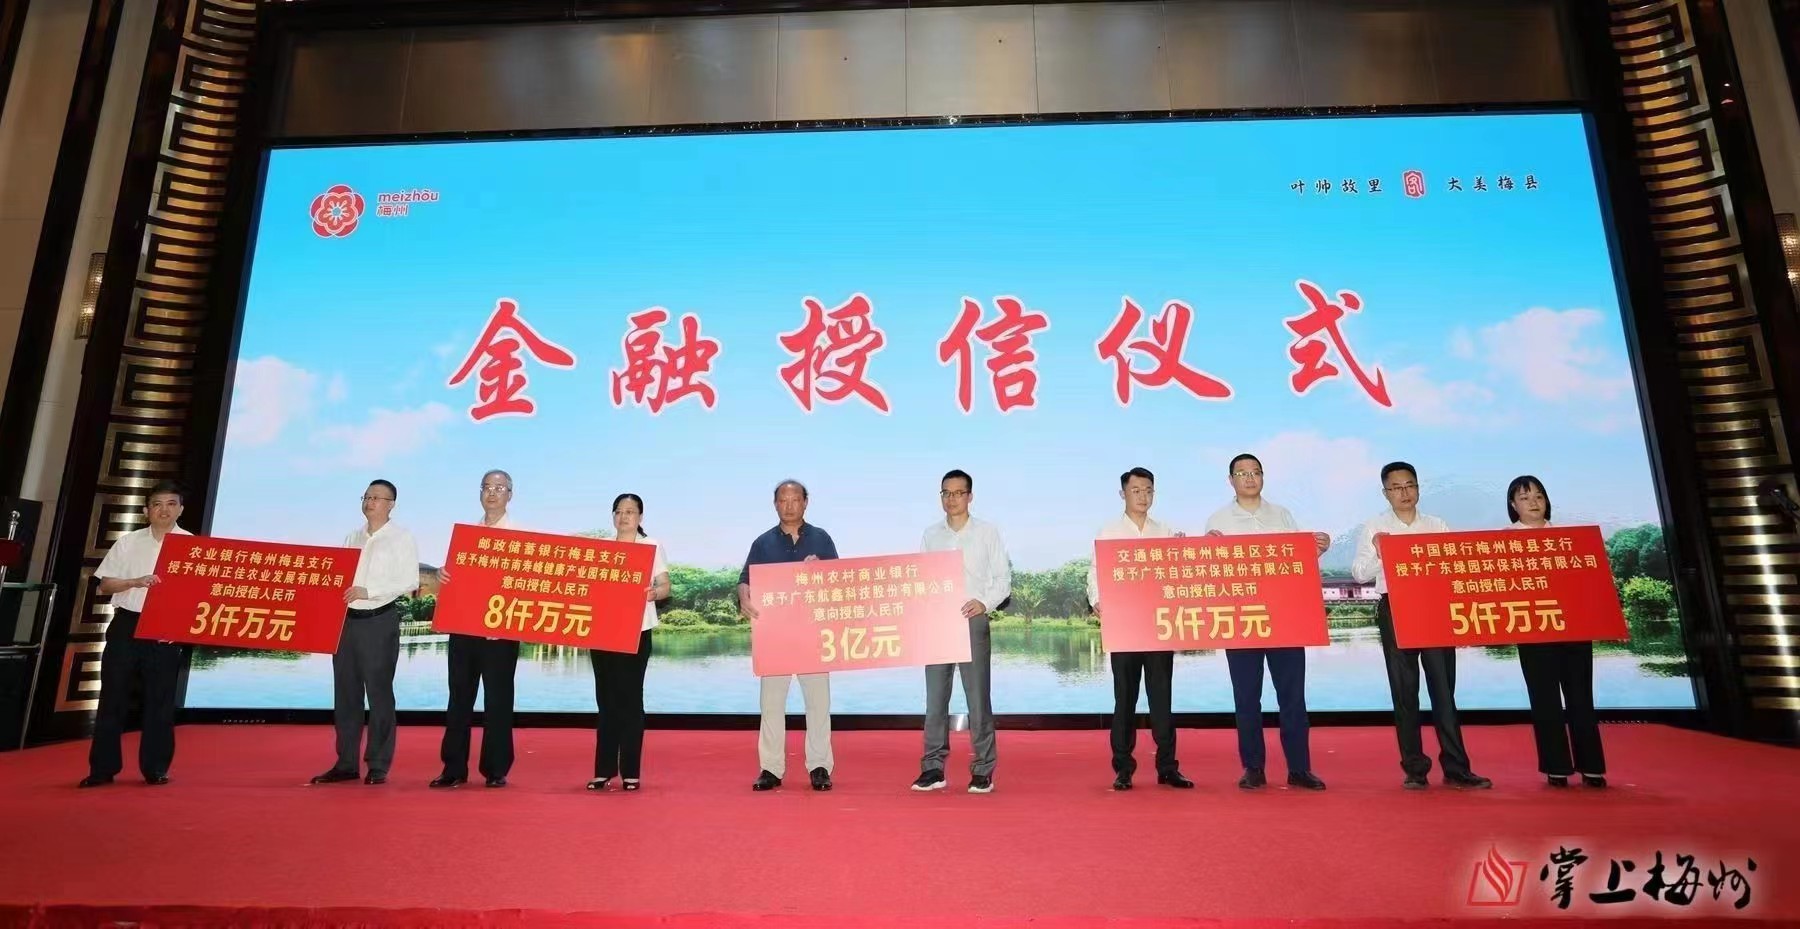 37000cm威尼斯获得中国银行意向授信额五千万元